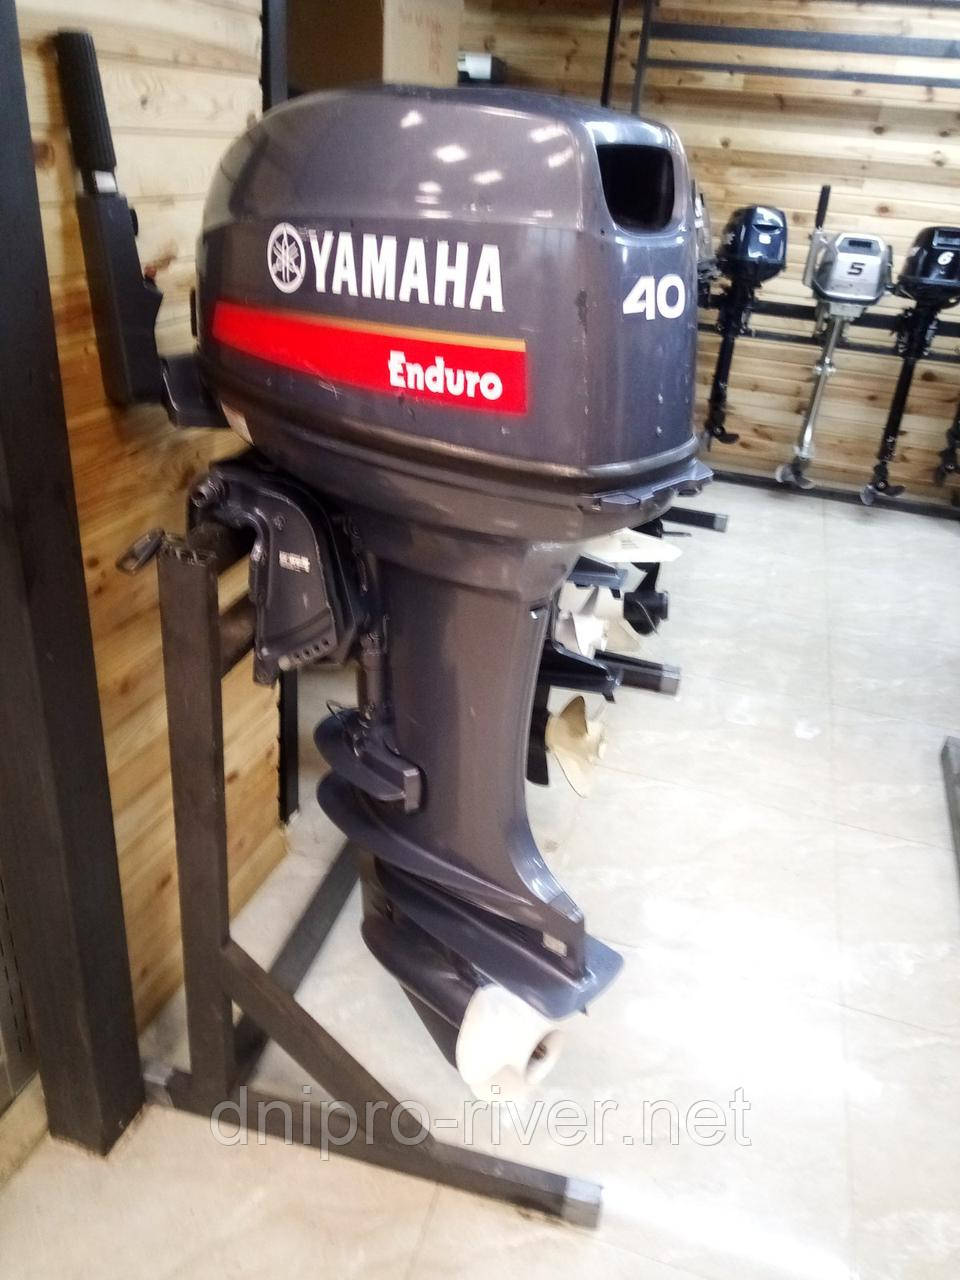   Yamaha  Enduro  40  L      